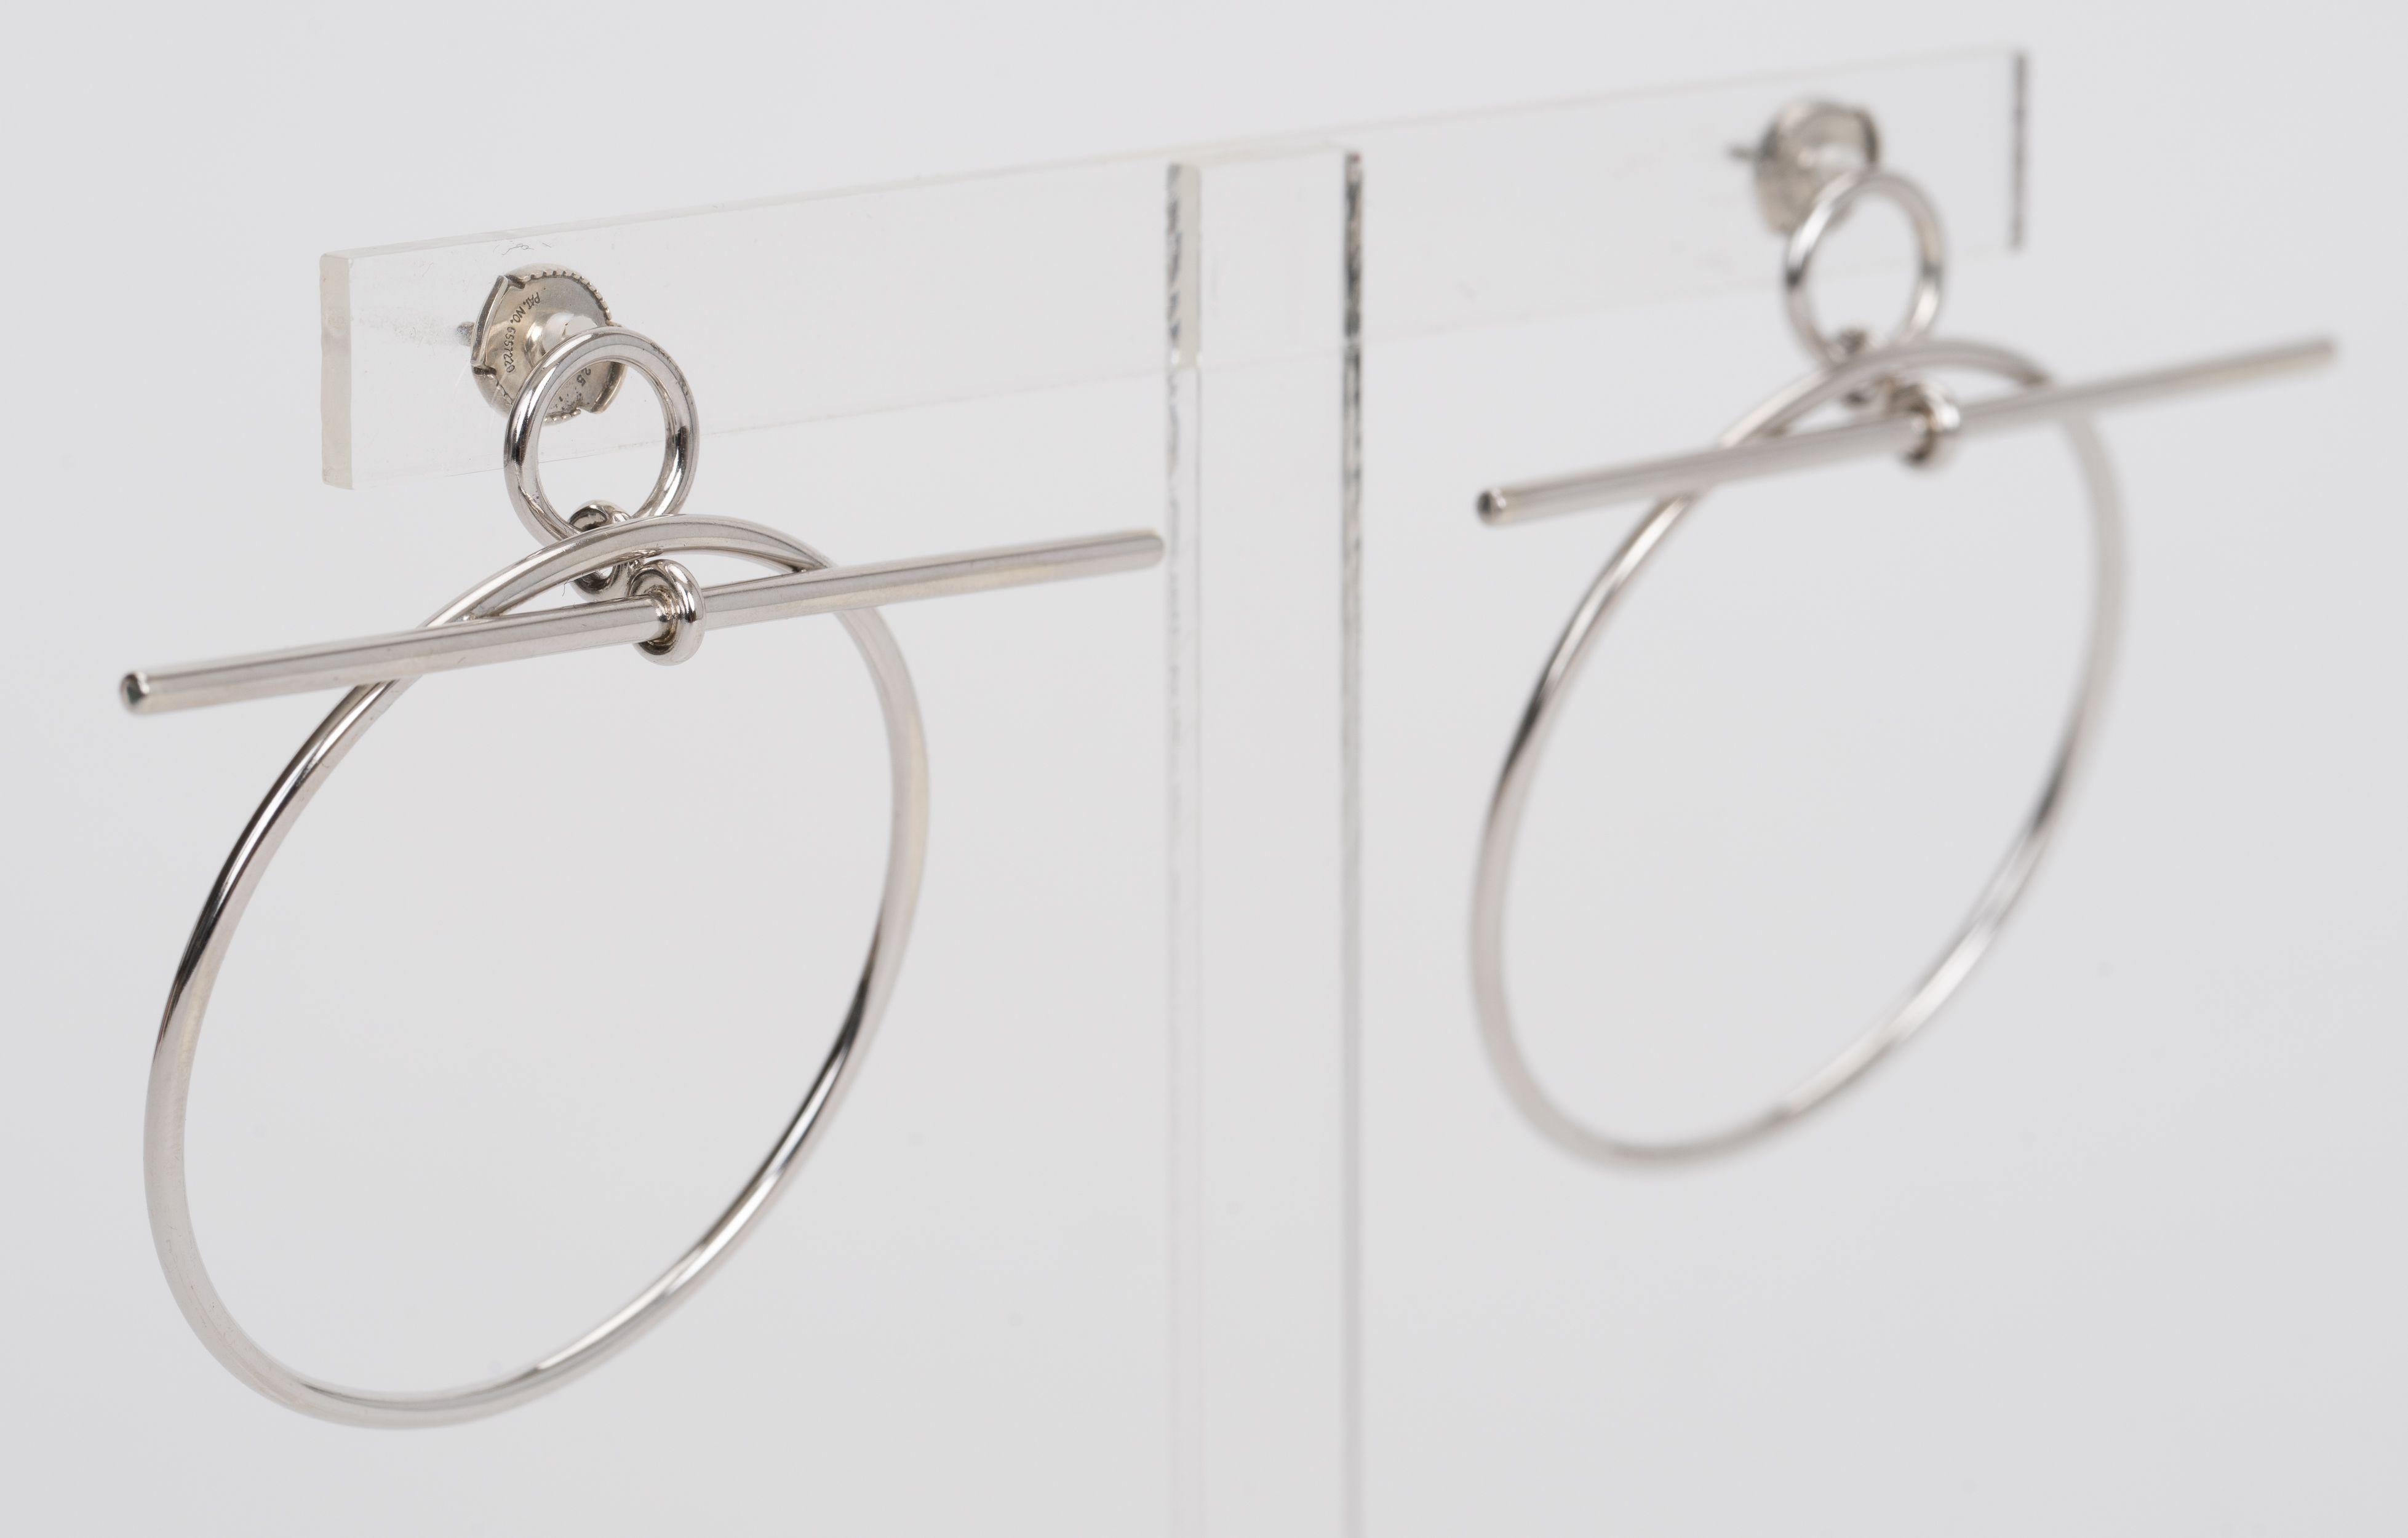 Les boucles d'oreilles Hermès Looping de taille moyenne sont fabriquées en argent sterling et dotées d'un fermoir à bascule. Les boucles d'oreilles présentent un style minimaliste et graphique. Numéro de série. Poinçon d'argent 925. Livré avec une